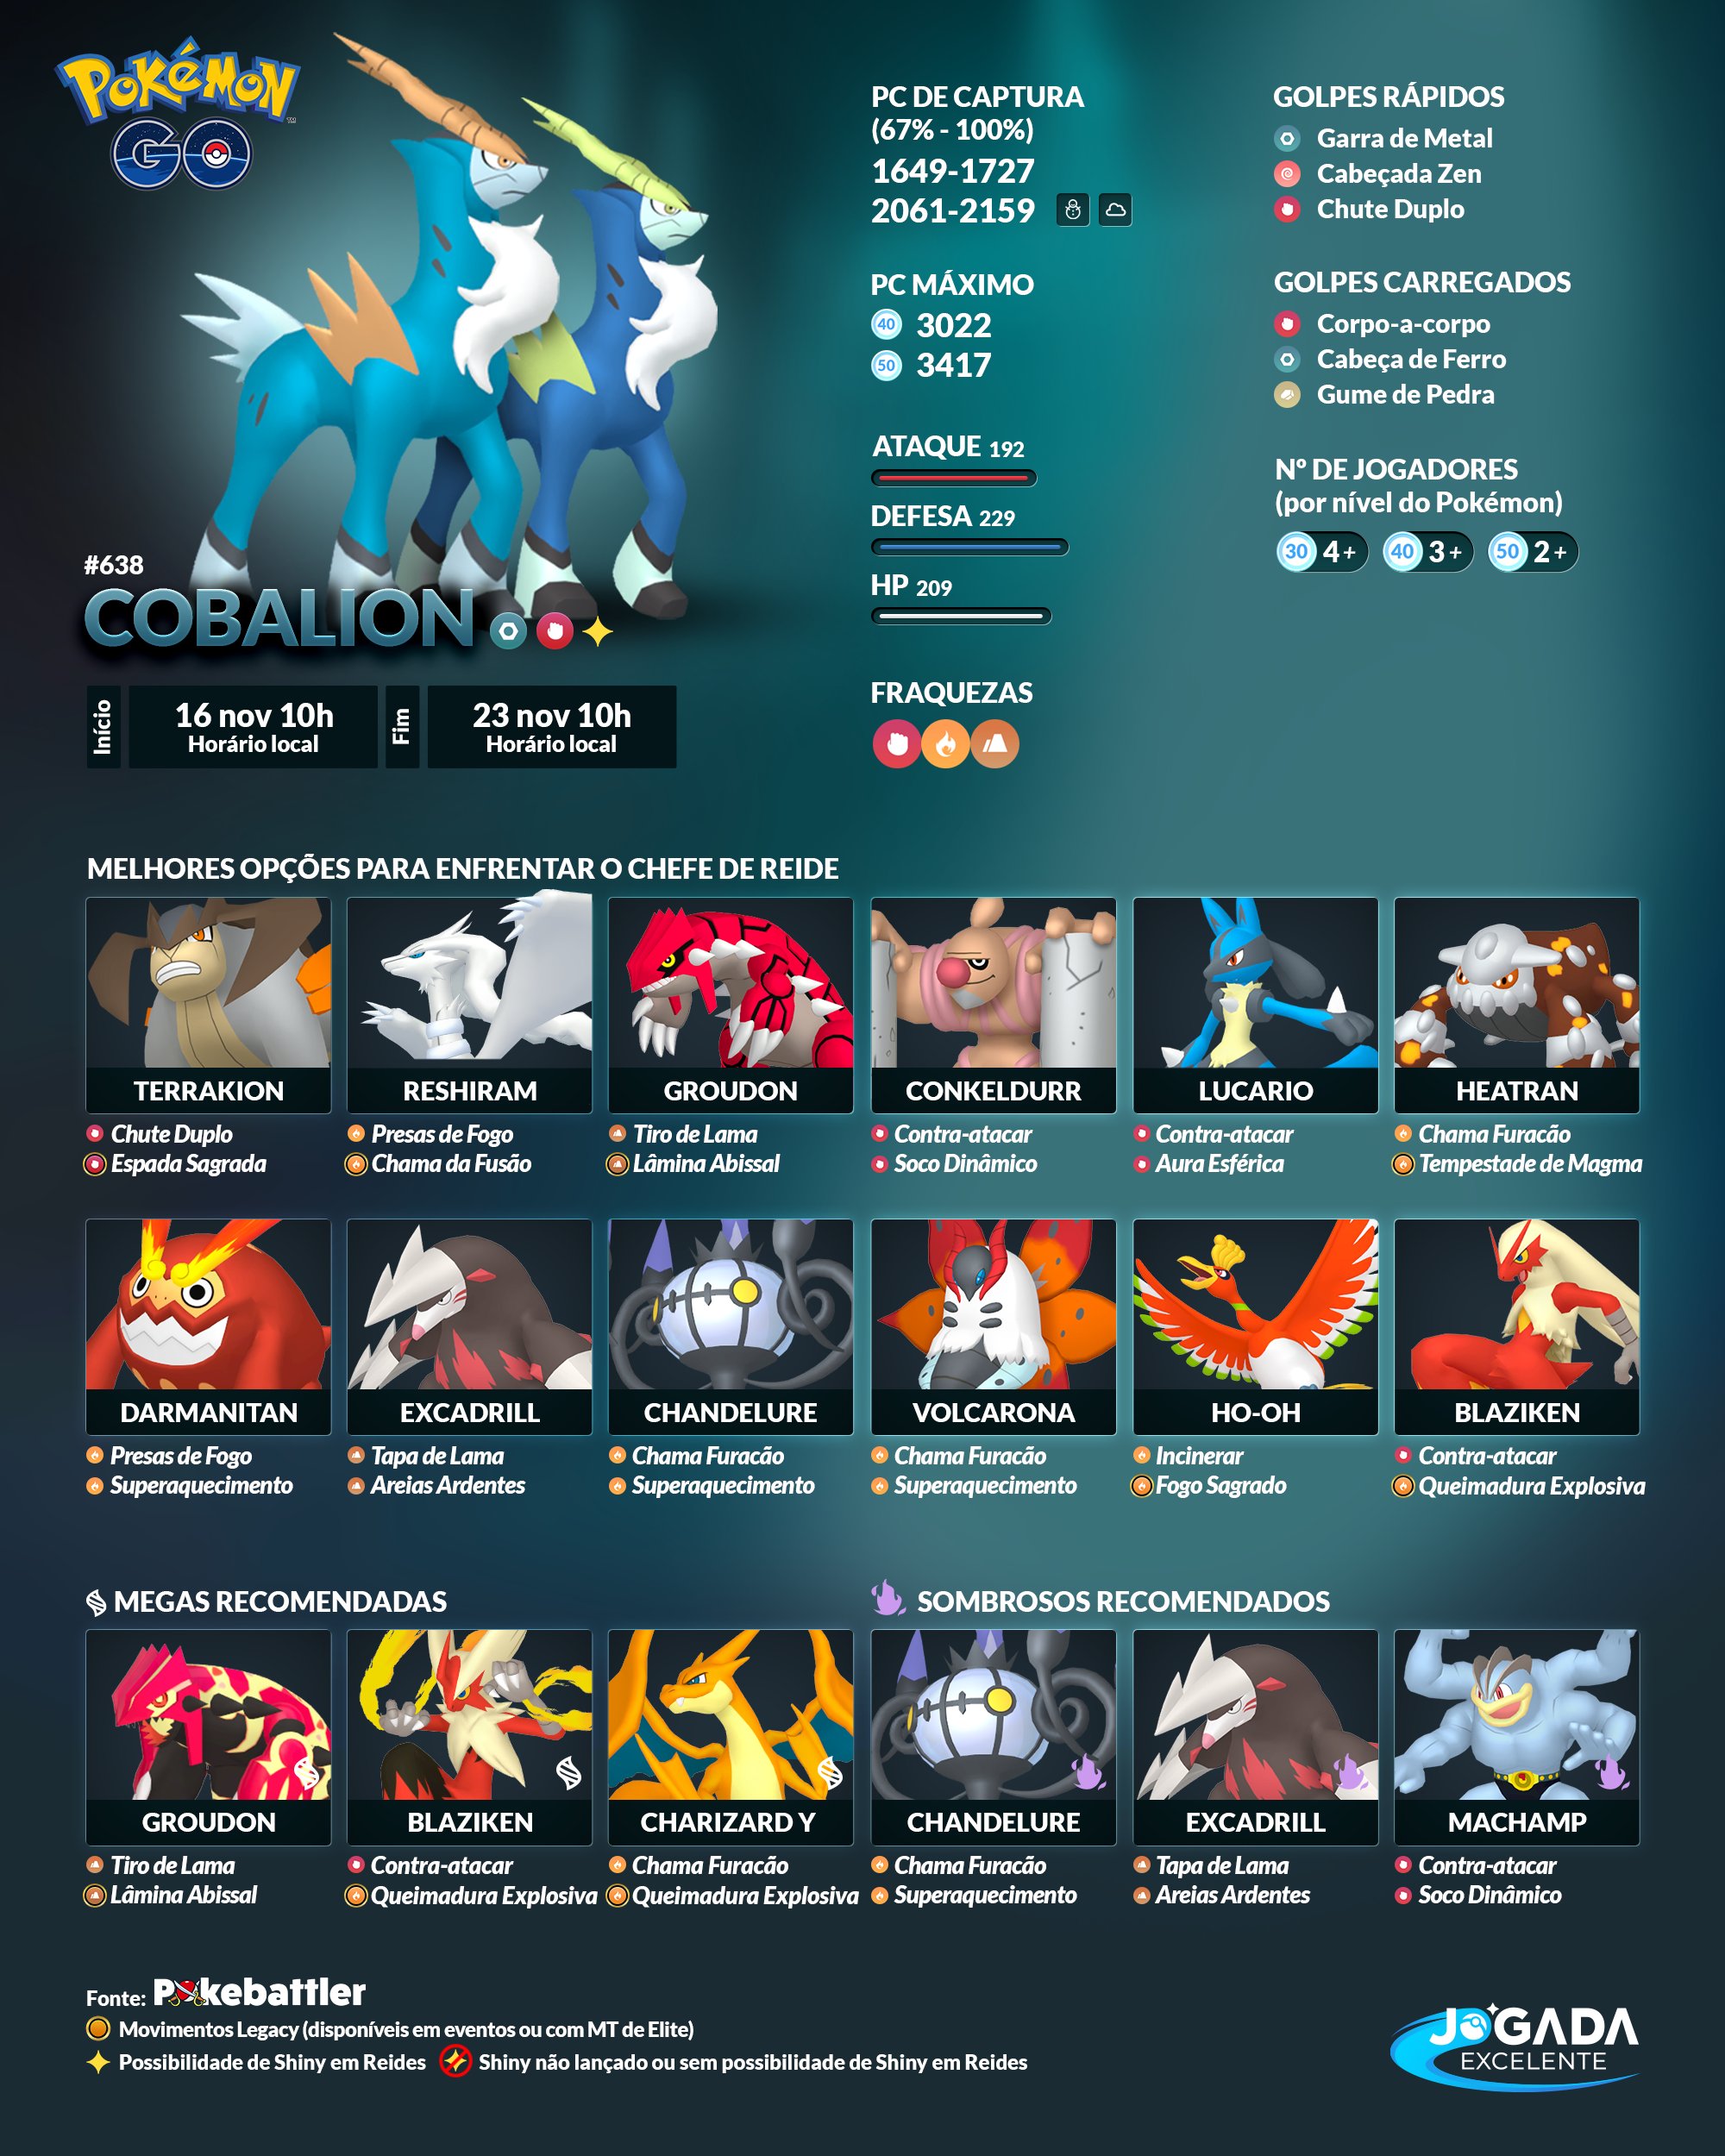 Covil do Calango on X: Amanhã no Covil tem Torneio Liga Pokémon (9h) -  Inscrição: R$ 10,00 convertida em premiação.  / X